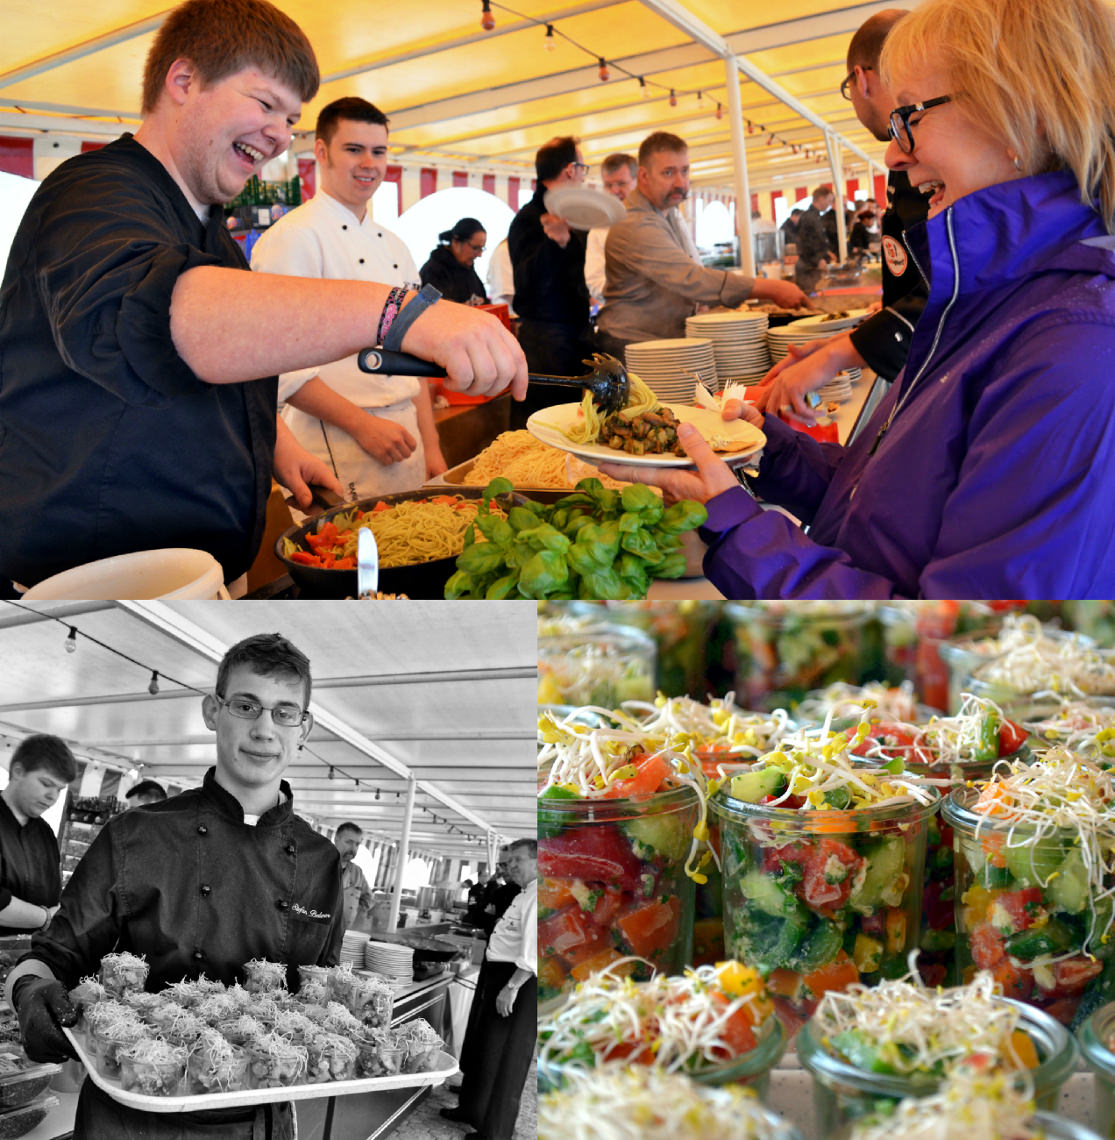 Impressionen von der Open-Air-Kochshow der FoodFighters auf Burg Rheinfels. #FoodFighters #MoToLogie